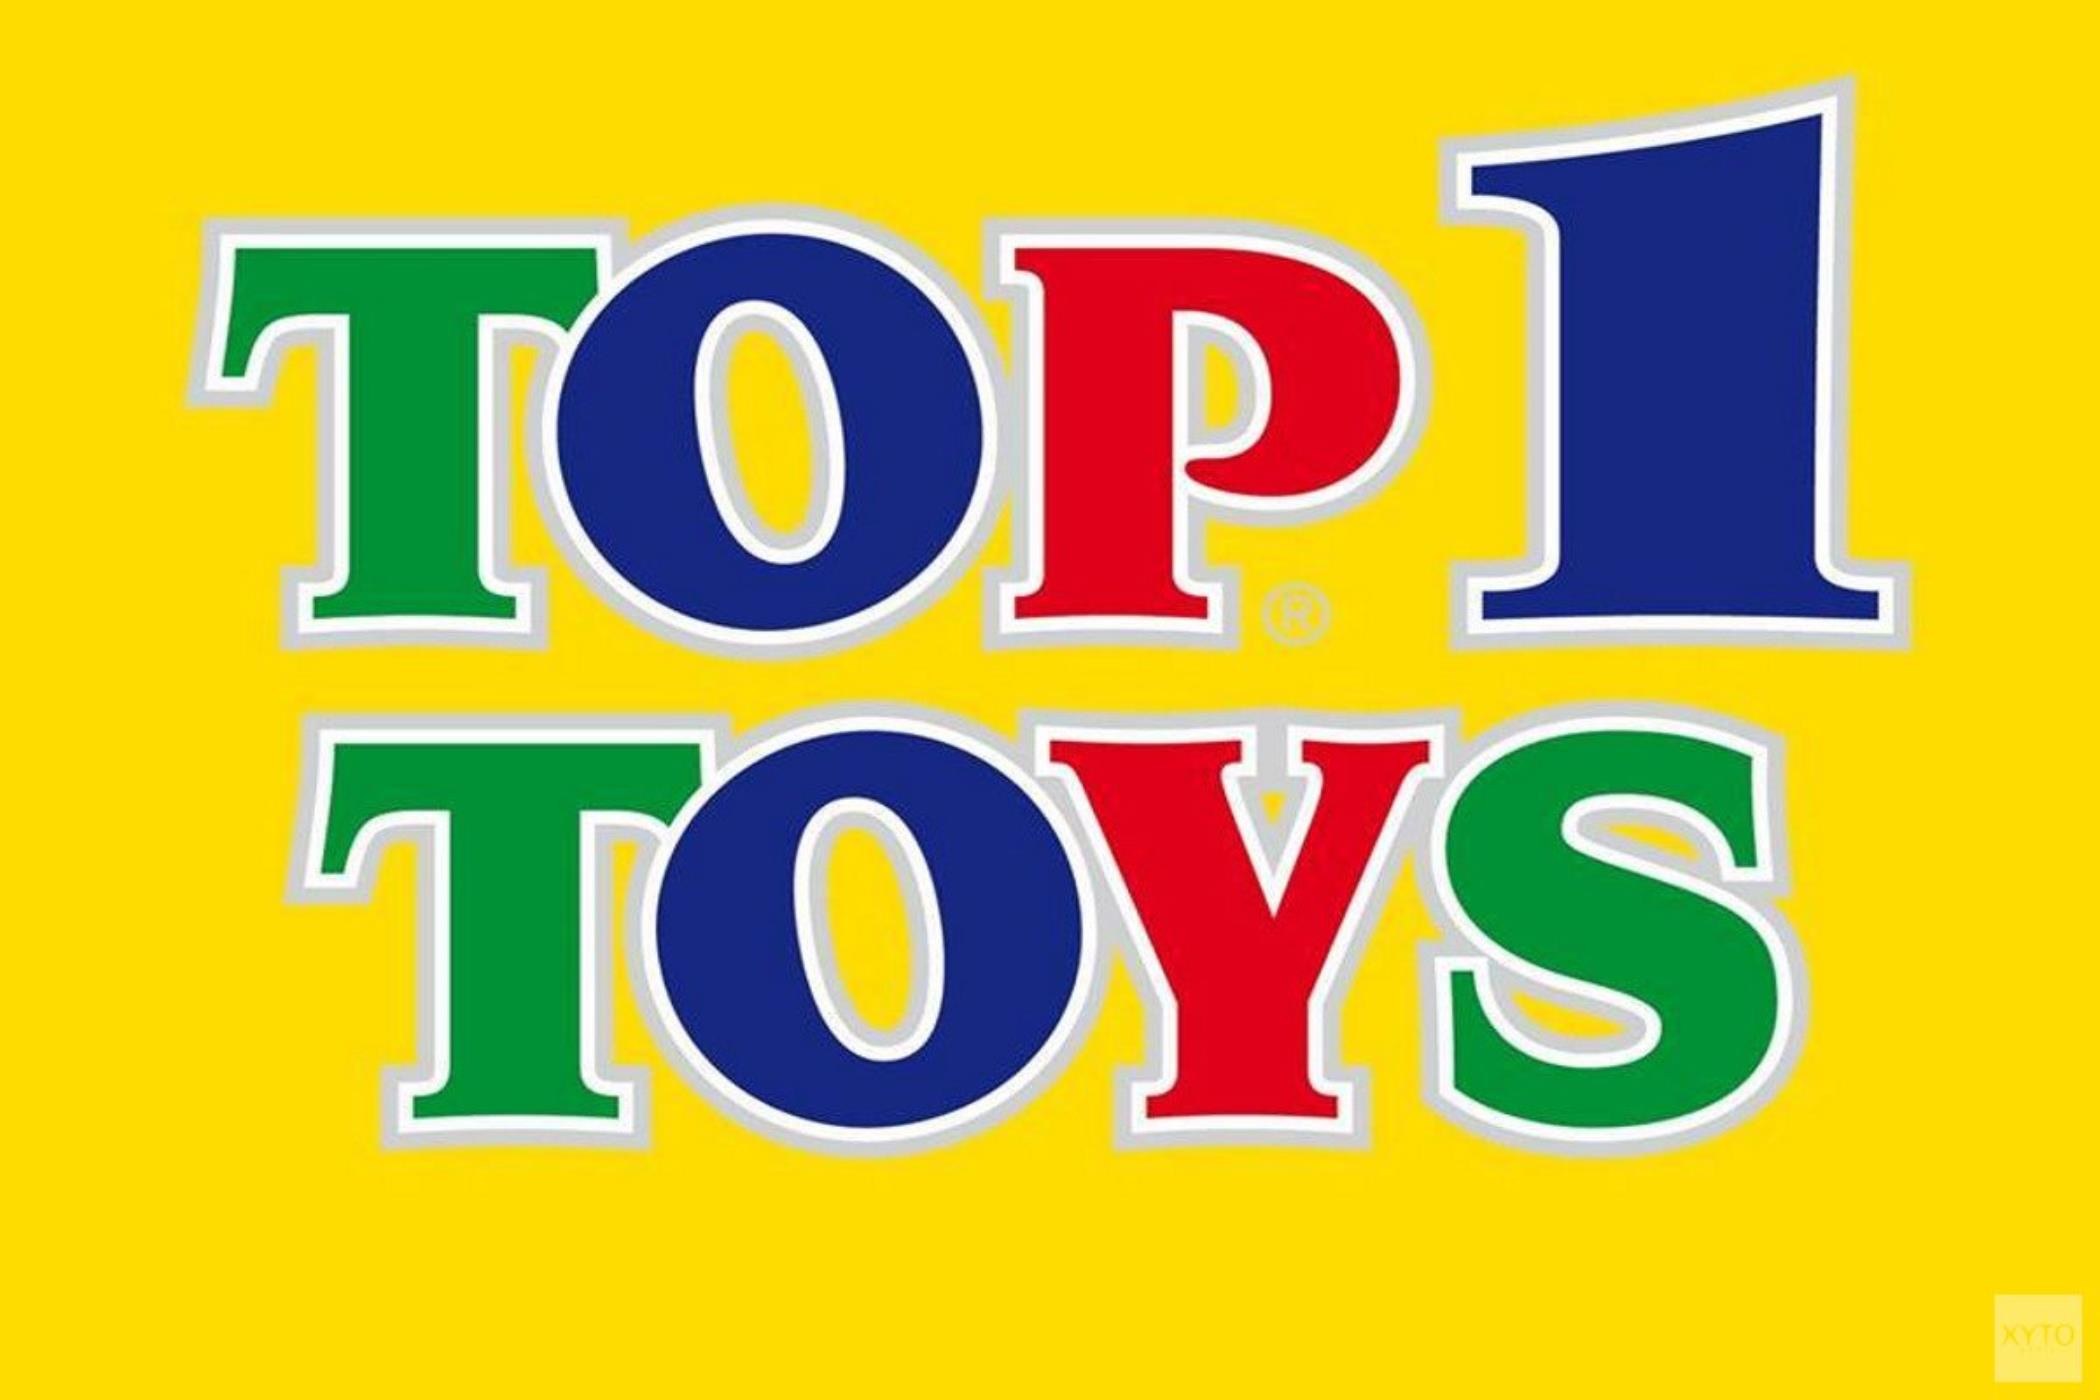 Logo Top1Toys